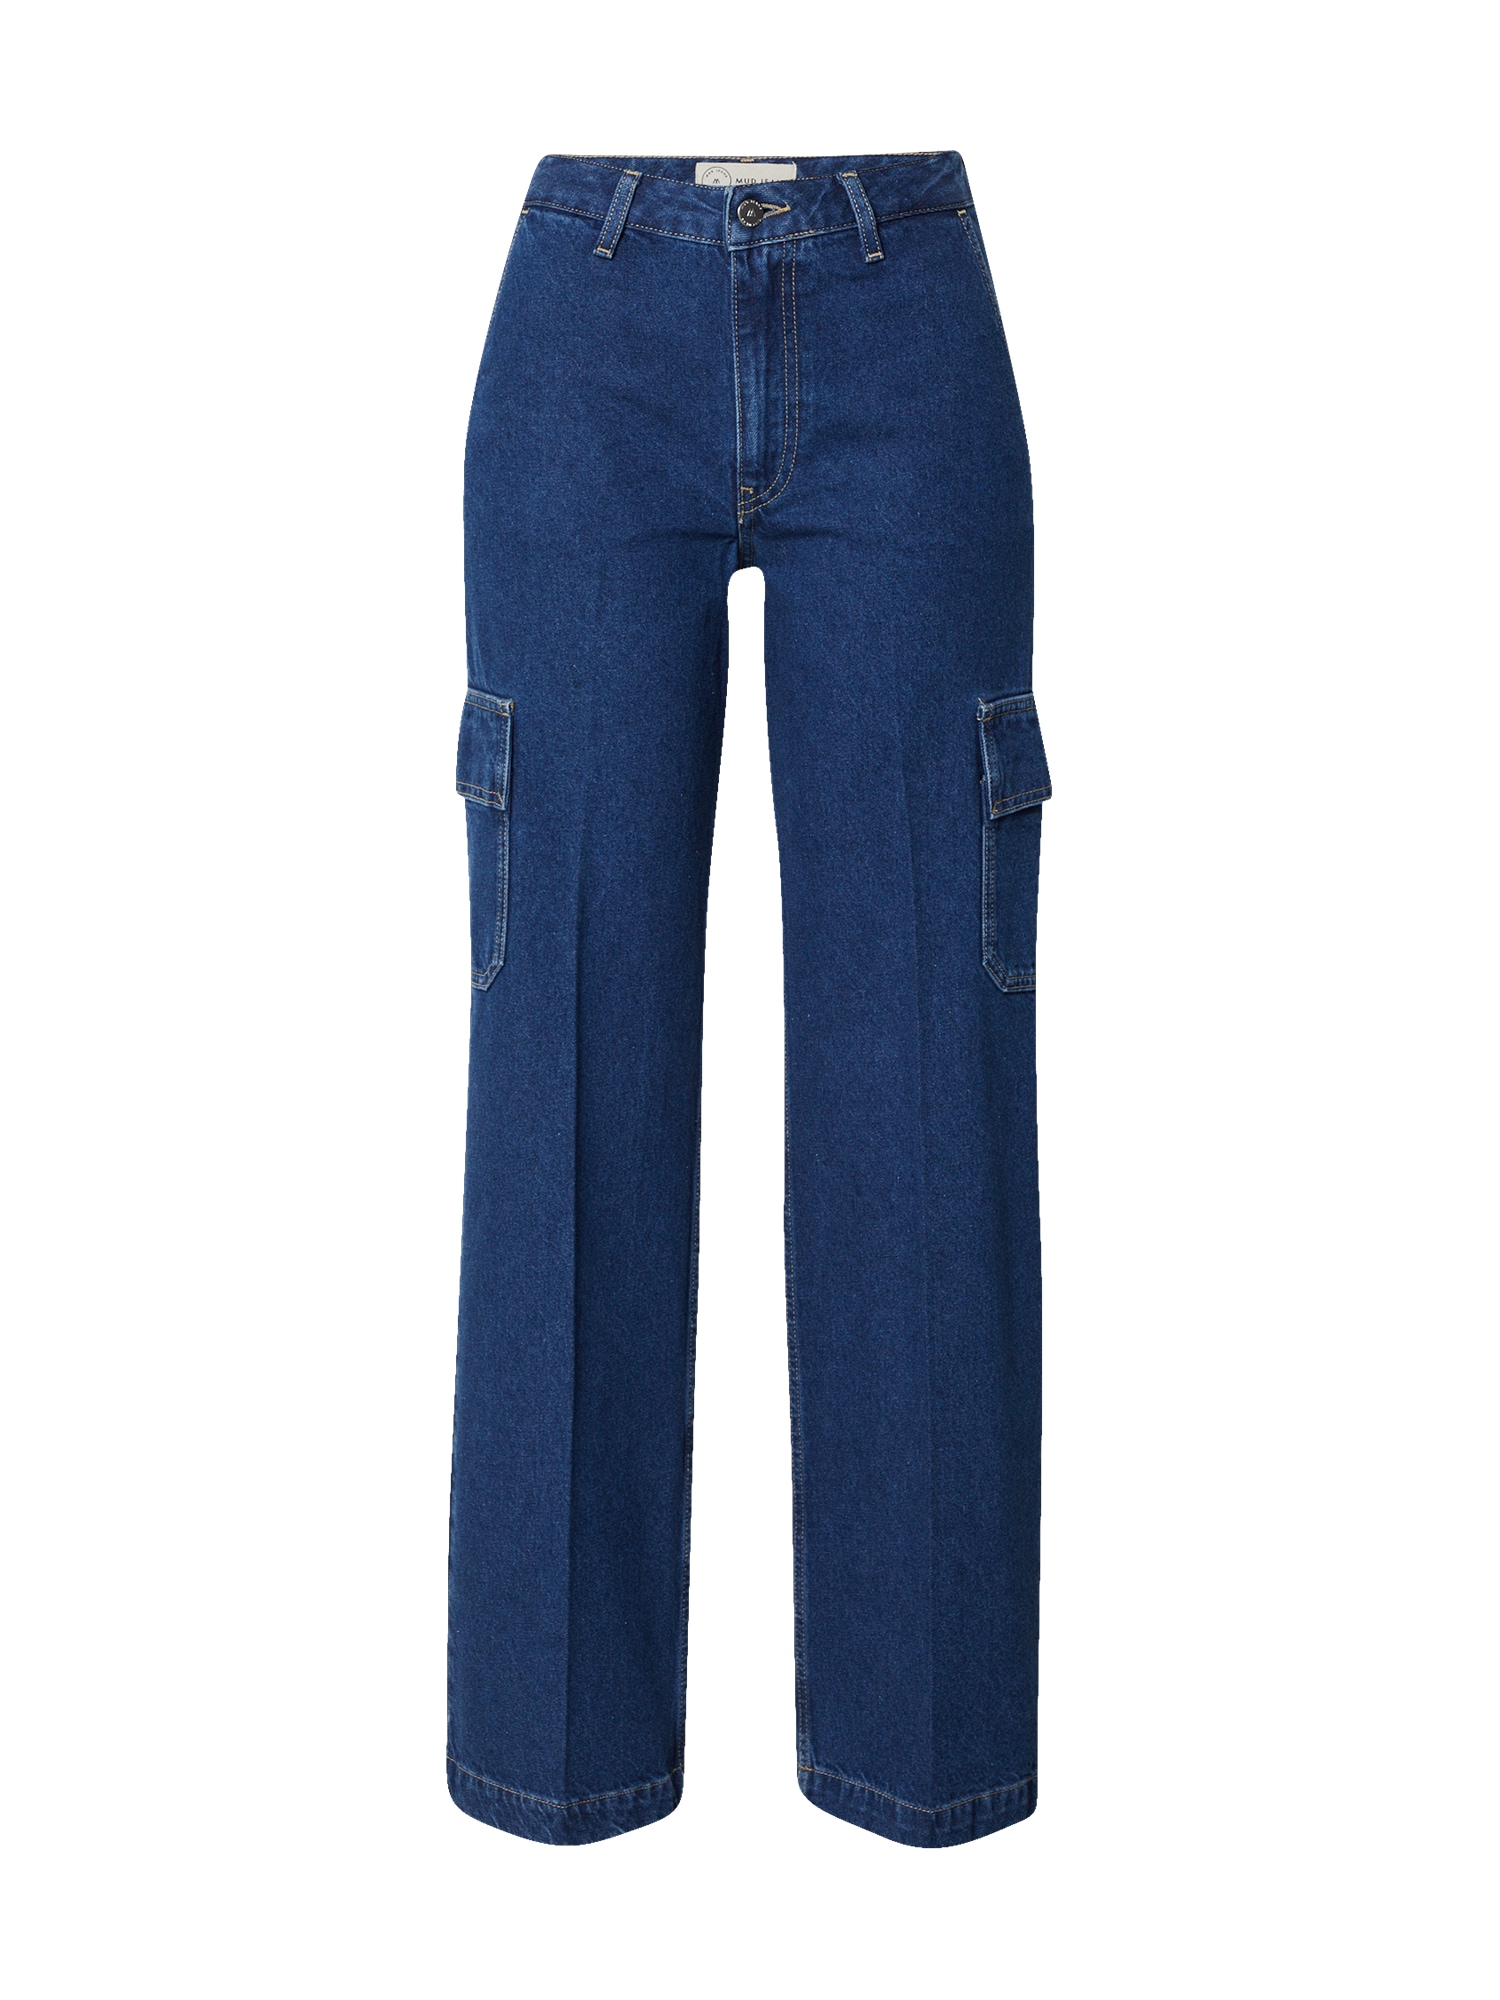 MUD Jeans Darbinio stiliaus džinsai 'Wilma Works' indigo spalva